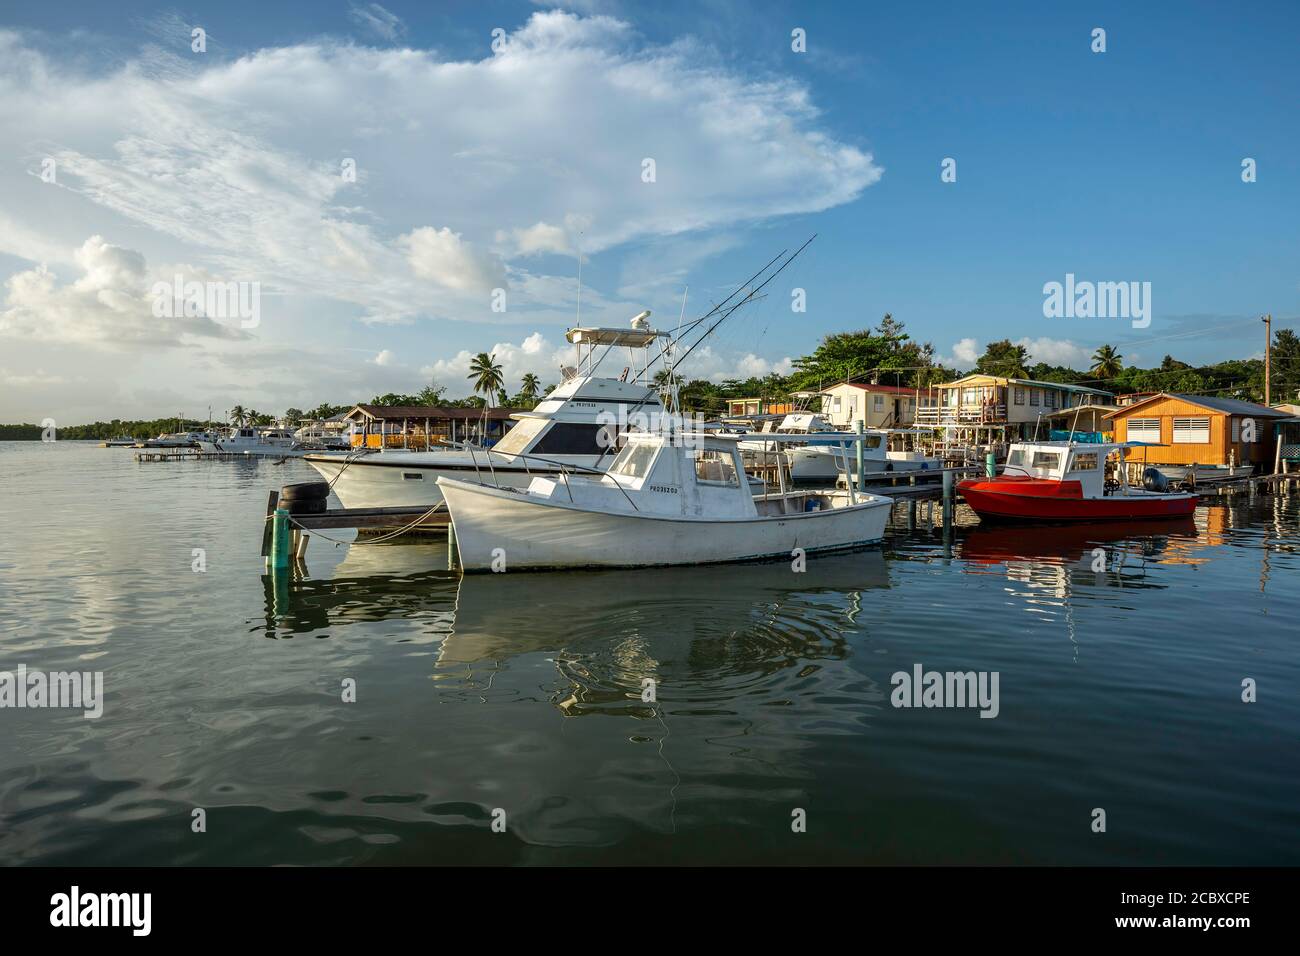 Les bateaux de pêche et ses maisons colorées, village de pêcheurs de Puerto Real, Cabo Rojo, Puerto Rico Banque D'Images